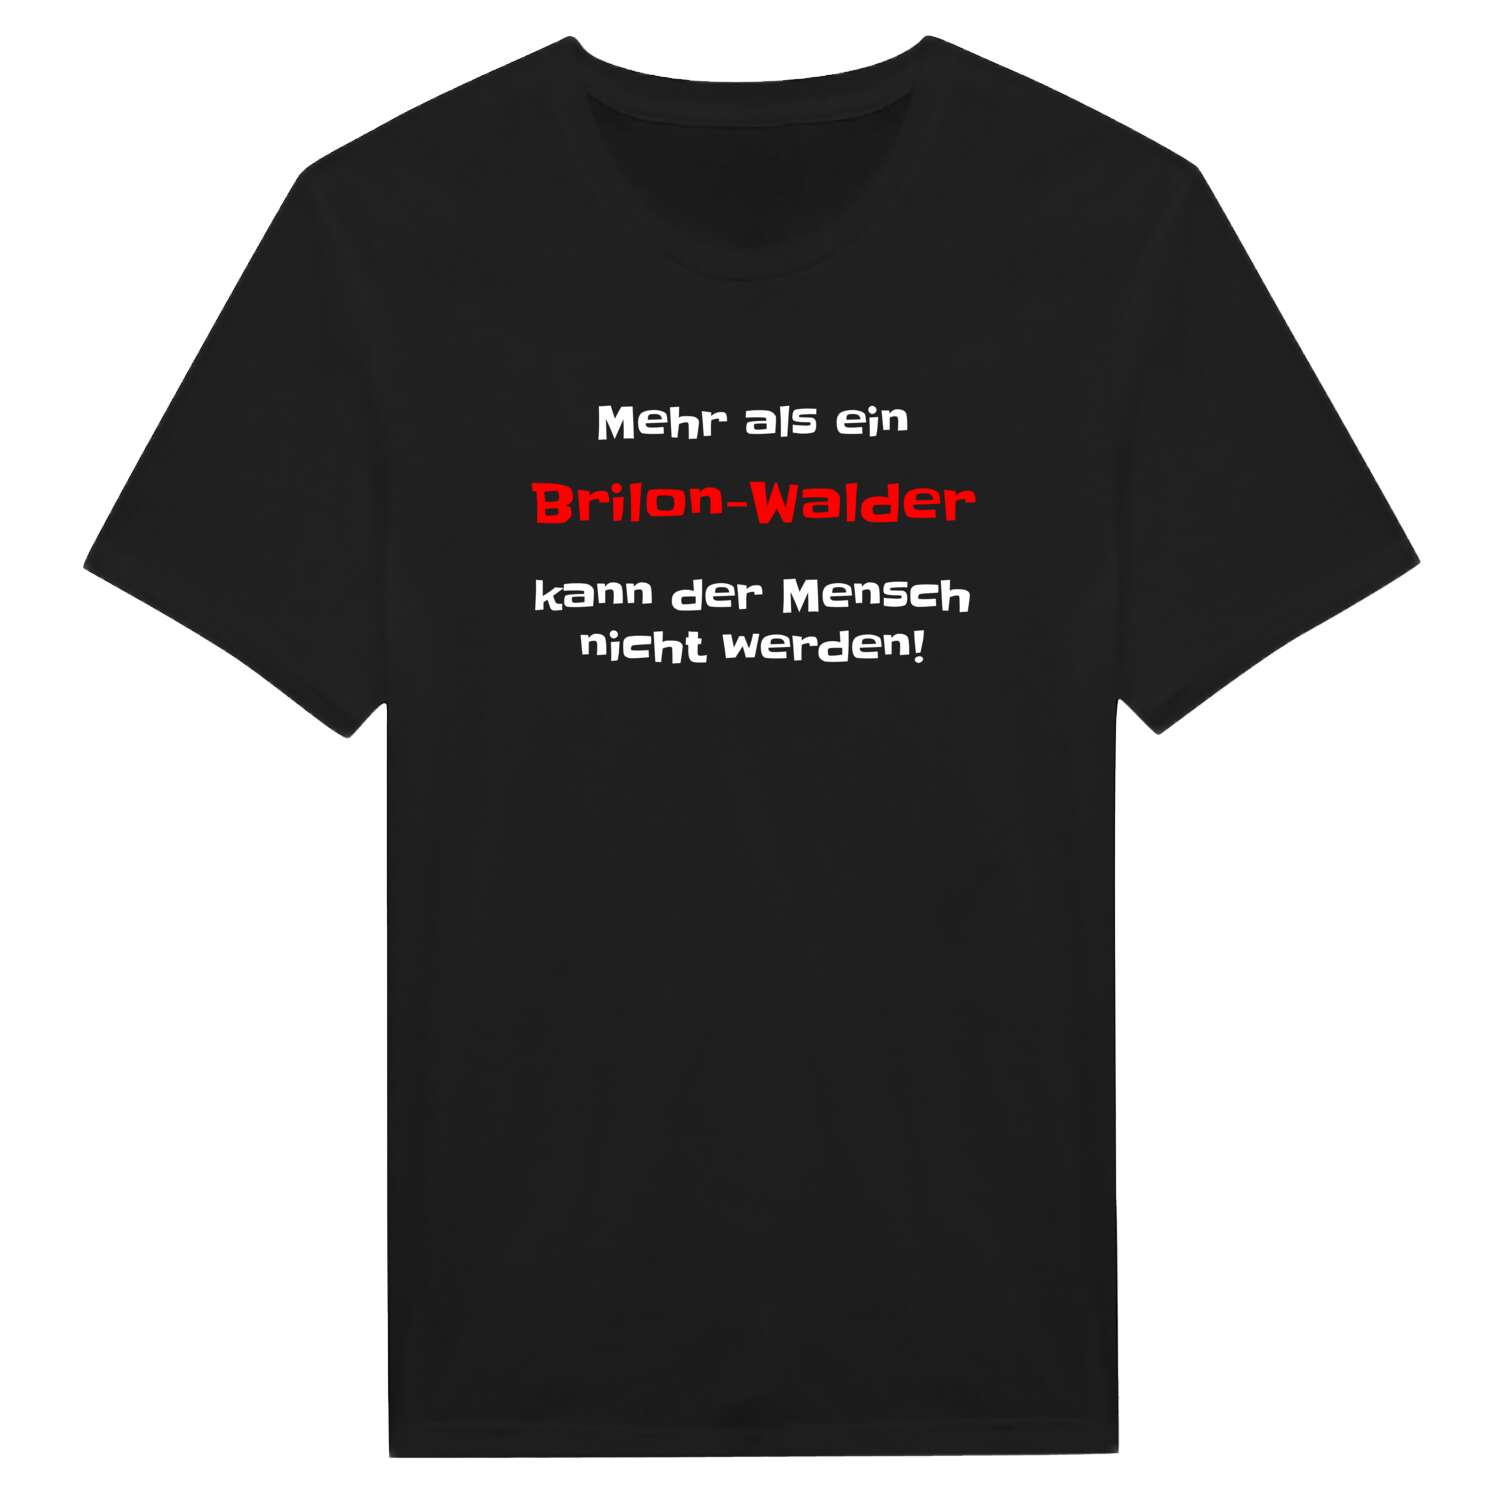 Brilon-Wald T-Shirt »Mehr als ein«